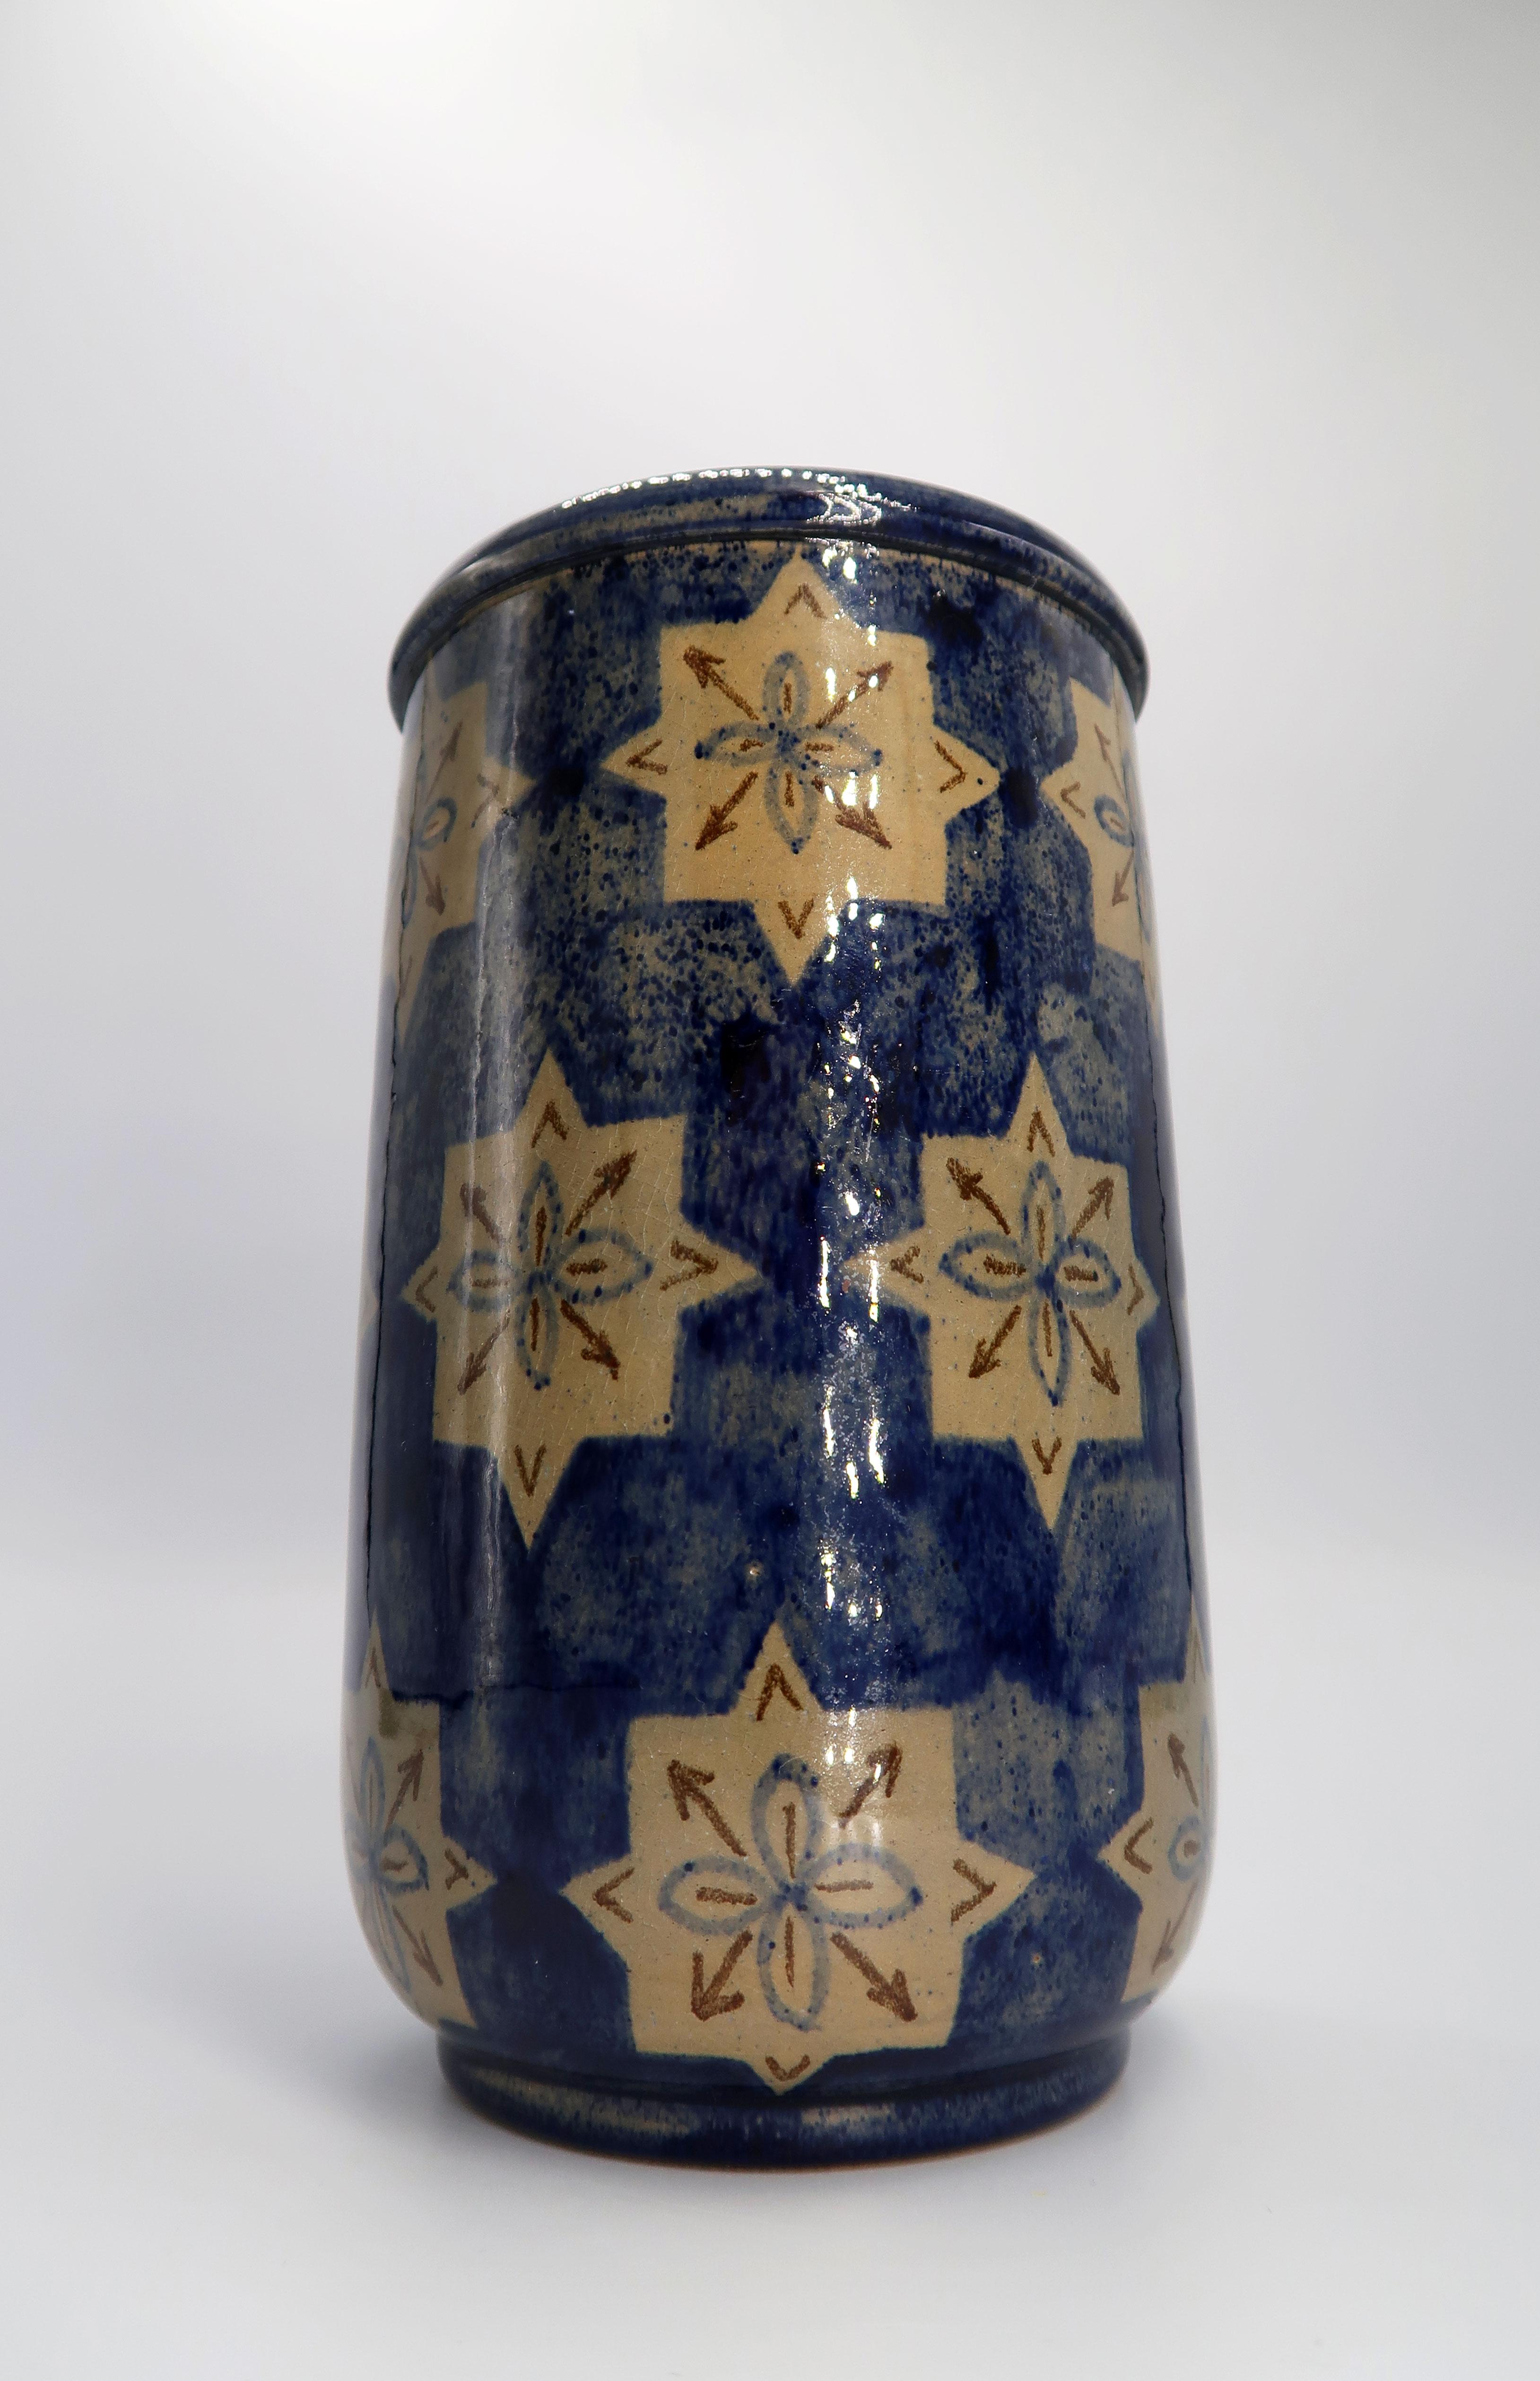 Magnifique vase en céramique de style Folk Art danois Mid-Century Modern, fait et peint à la main, datant du début des années 1940. Fabriqué sur l'île de Bornholm par Søholm Keramik. Étoiles graphiques de couleur camel avec des flèches brunes sur un